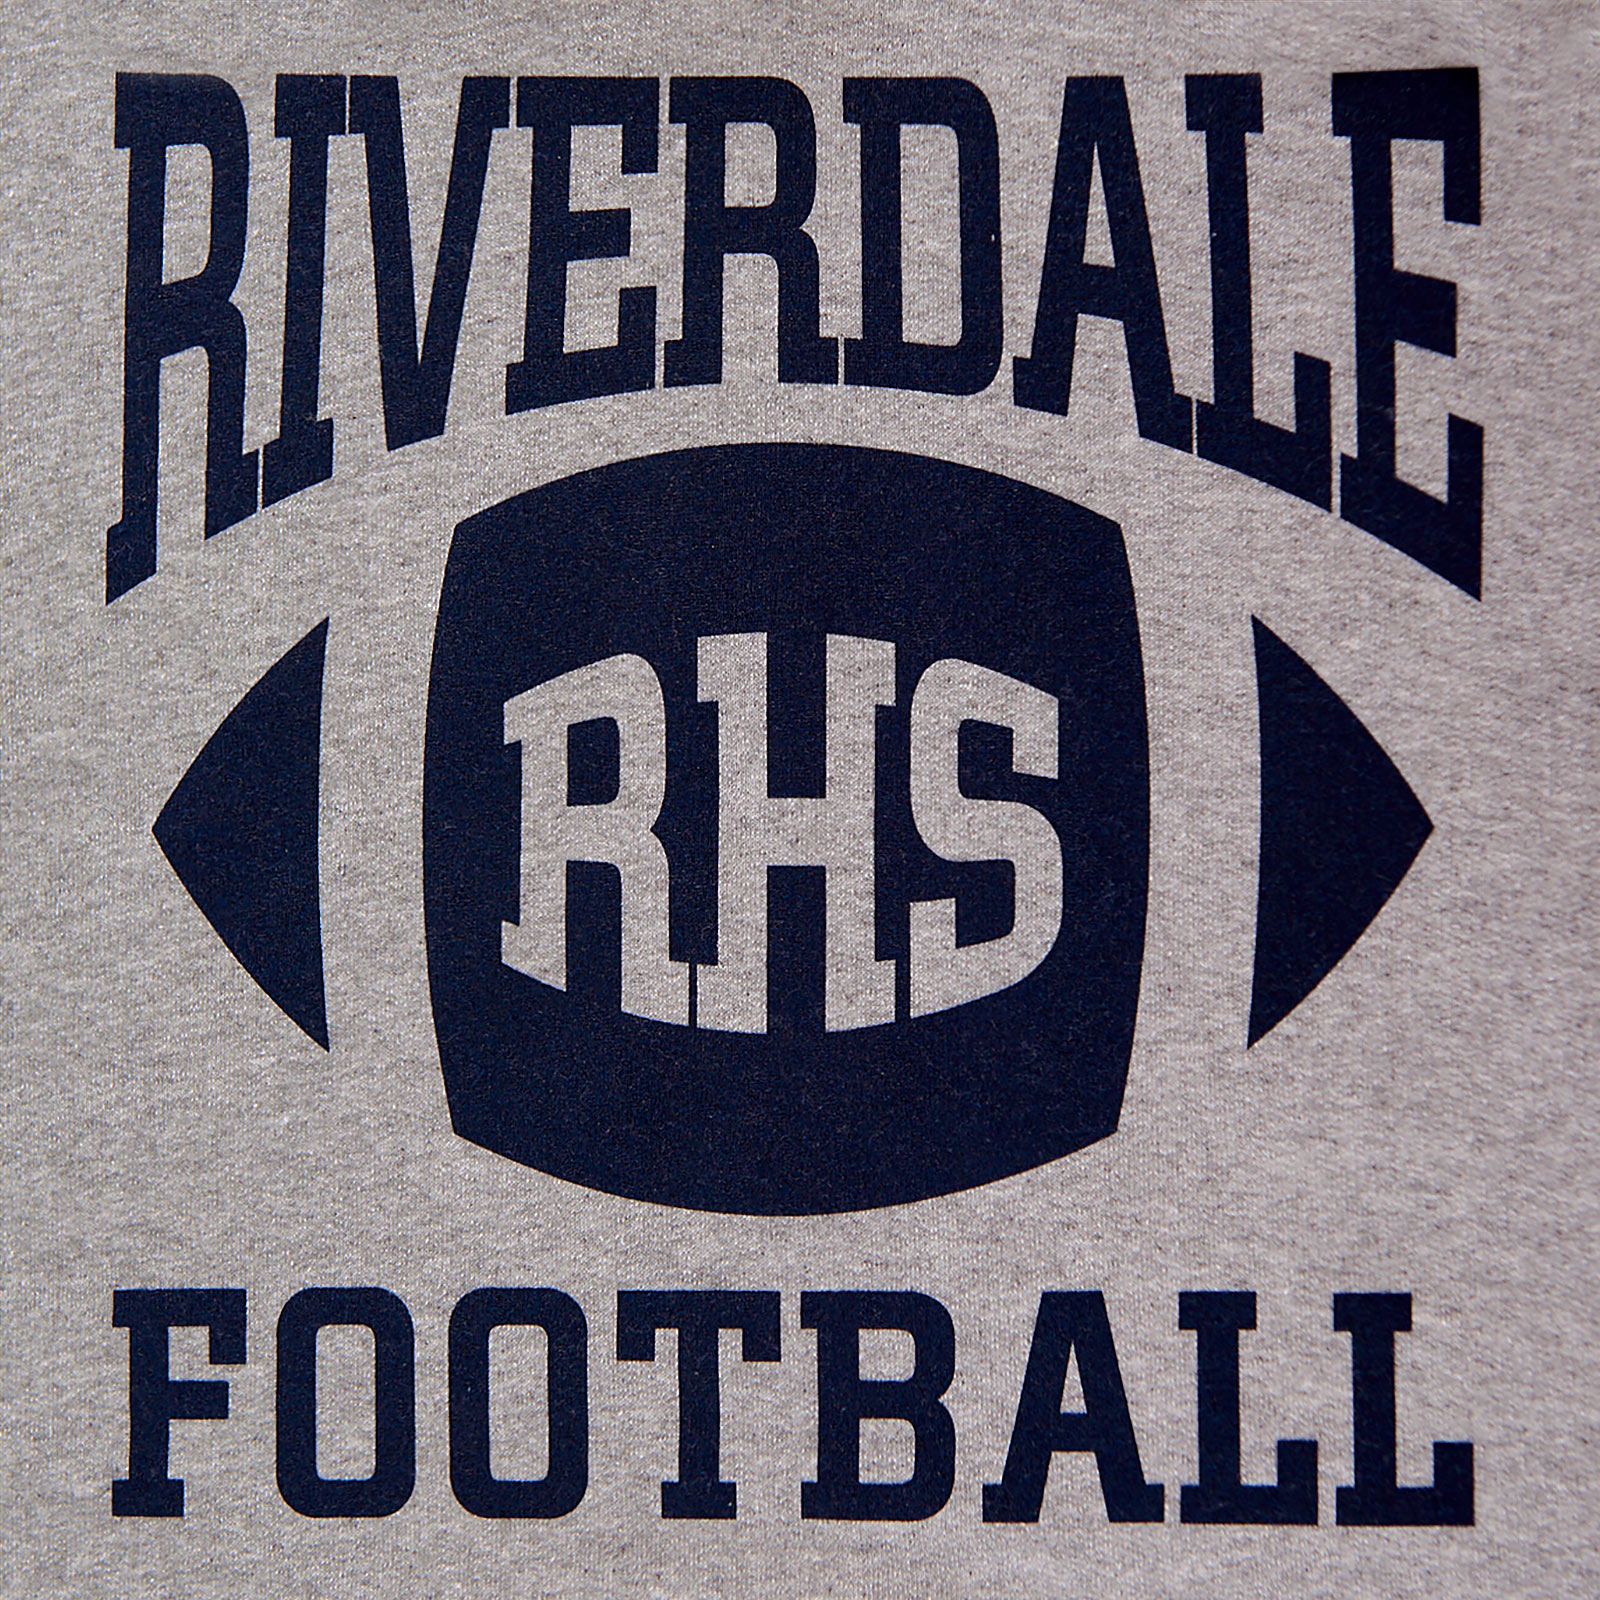 Riverdale - RHS Football Team Hoodie Grey